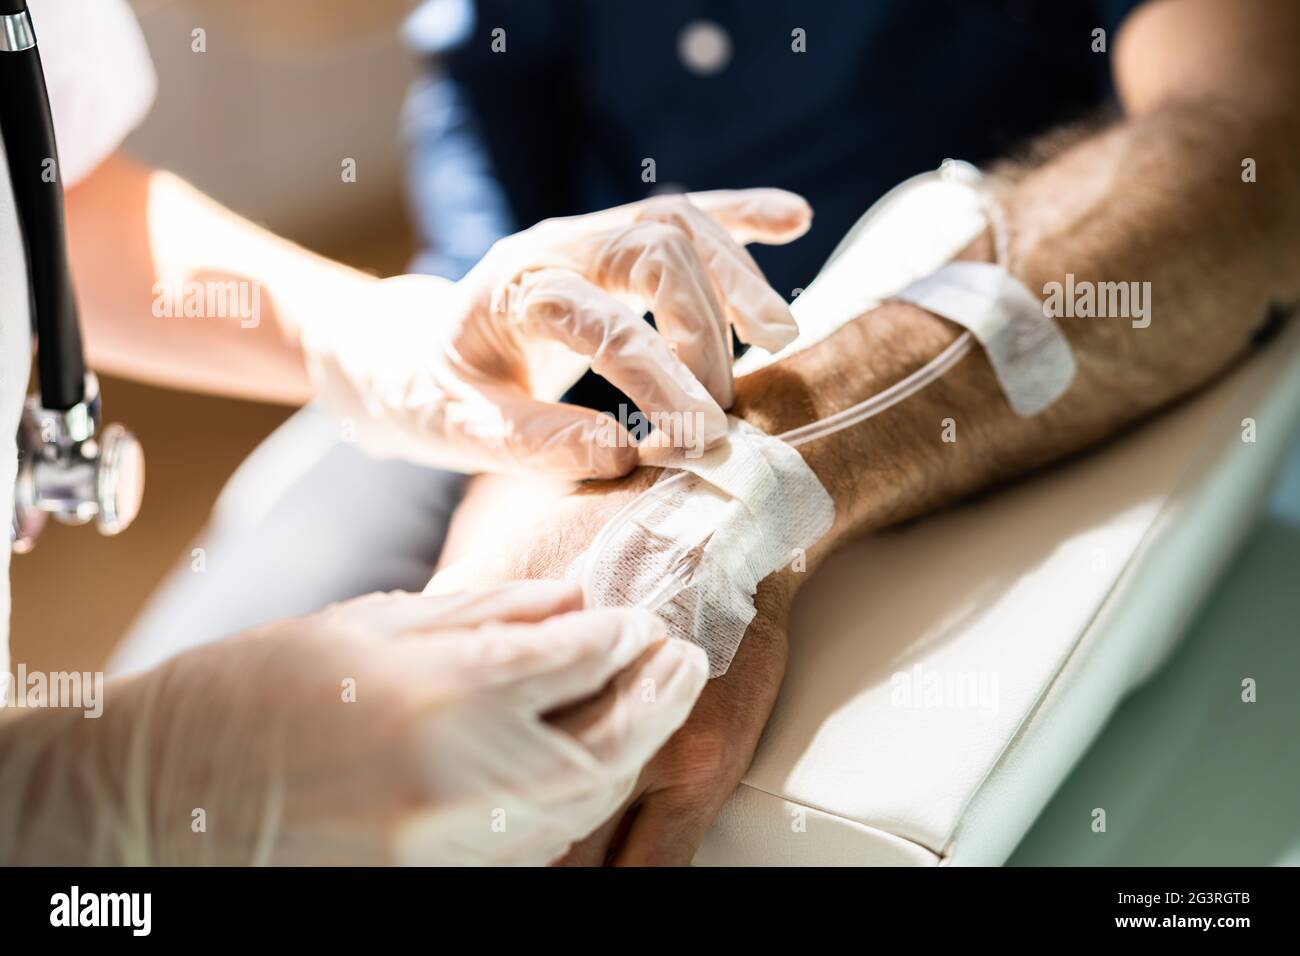 L'infermiere o il medico esamina il catetere paziente oncologico per la chemioterapia Foto Stock